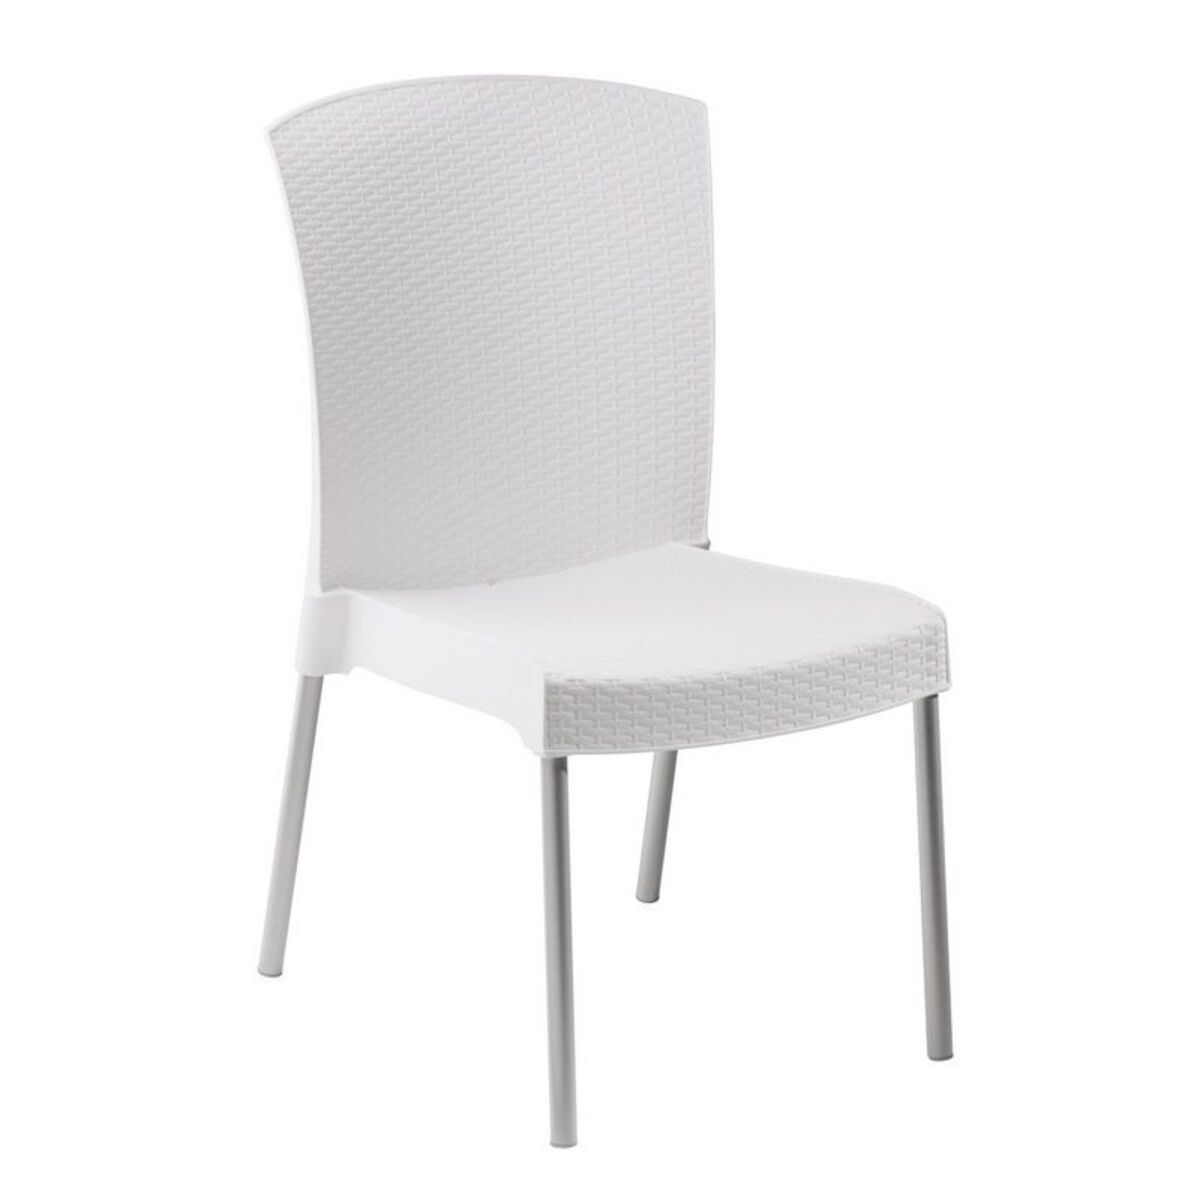 Chaise coloris blanc pieds en aluminium grosfillex - par 16